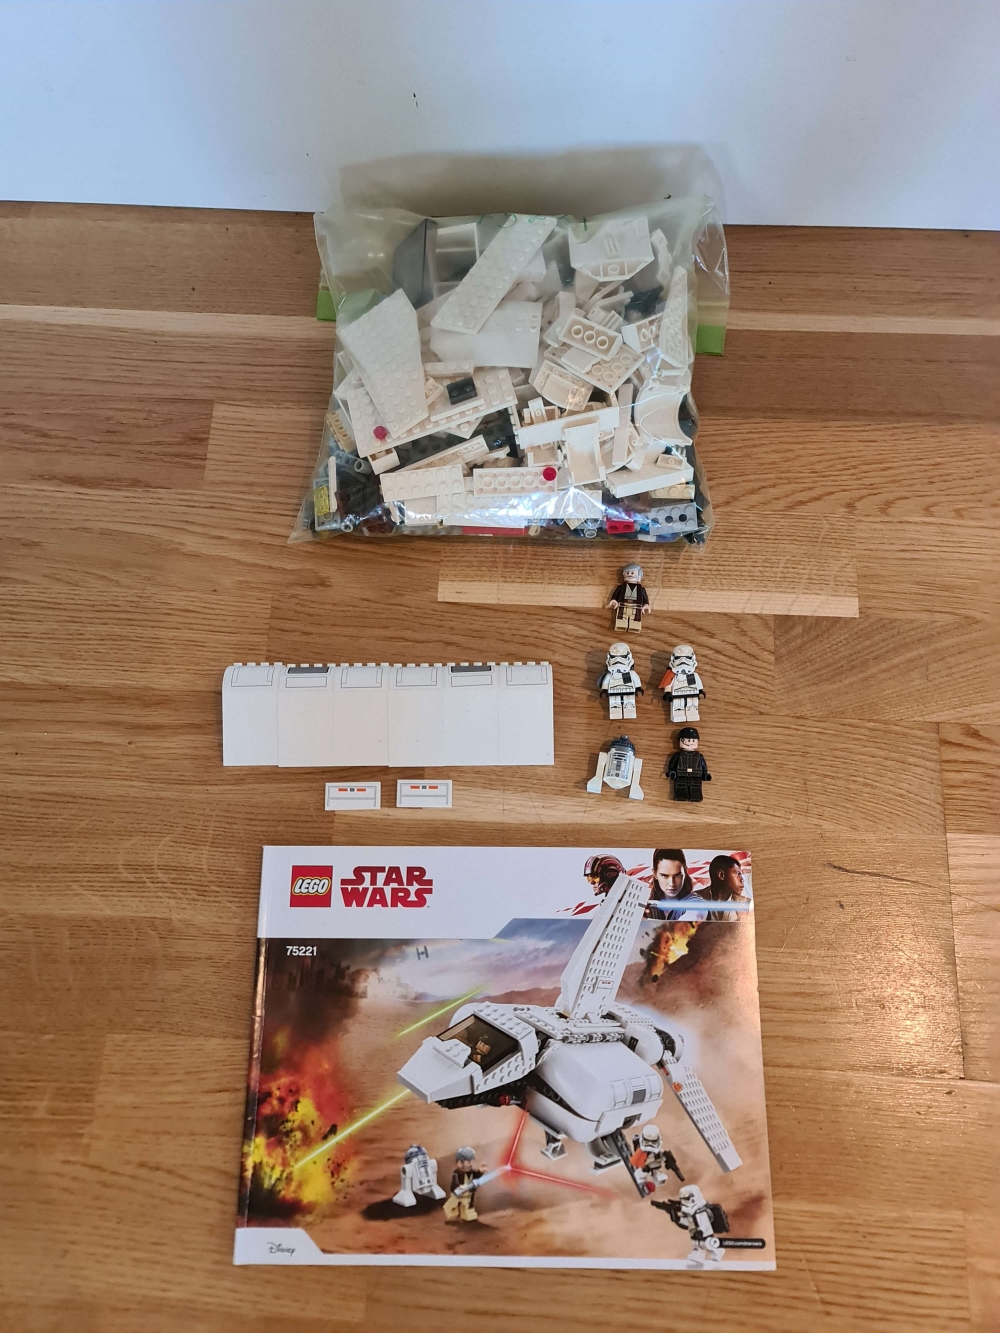 Sett 75221 fra Lego Star Wars : Episode 4/5/6 serien
Meget pent. Som nytt.
Komplett med manual.